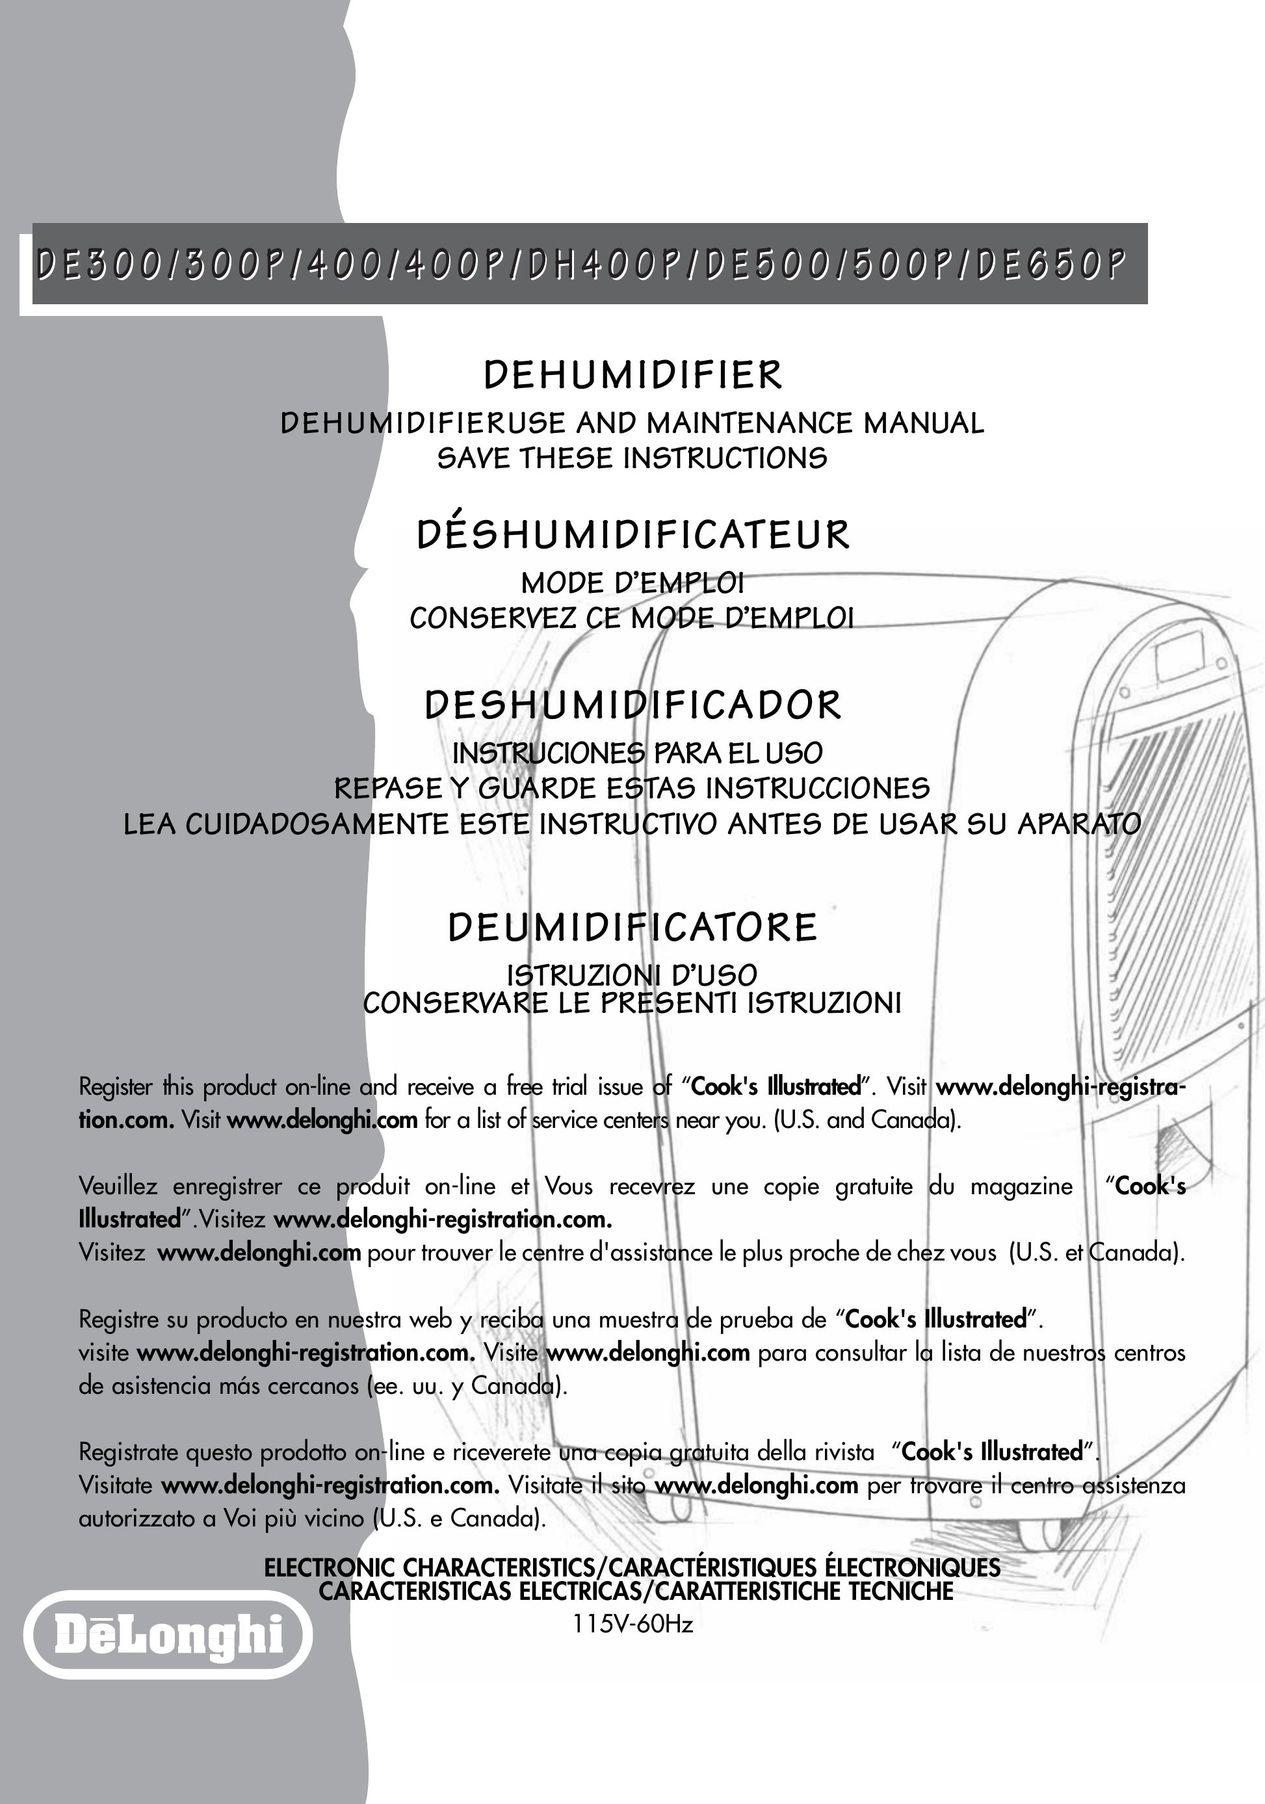 DeLonghi DE300P Dehumidifier User Manual